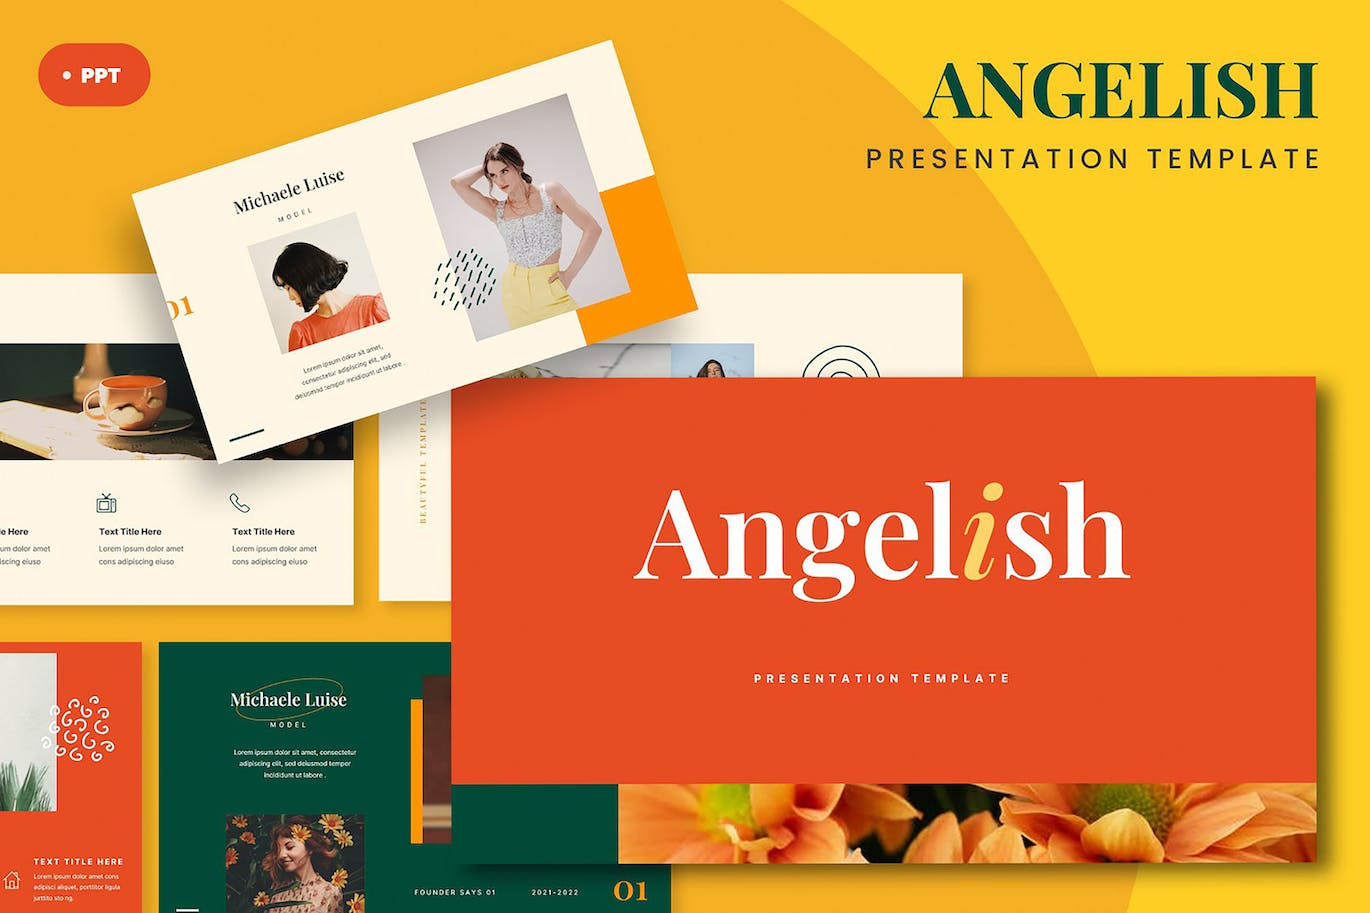 创意时尚宣传材料Powerpoint模板 Angelish – Creative Fashion Angelish Powerpoint 幻灯图表 第1张